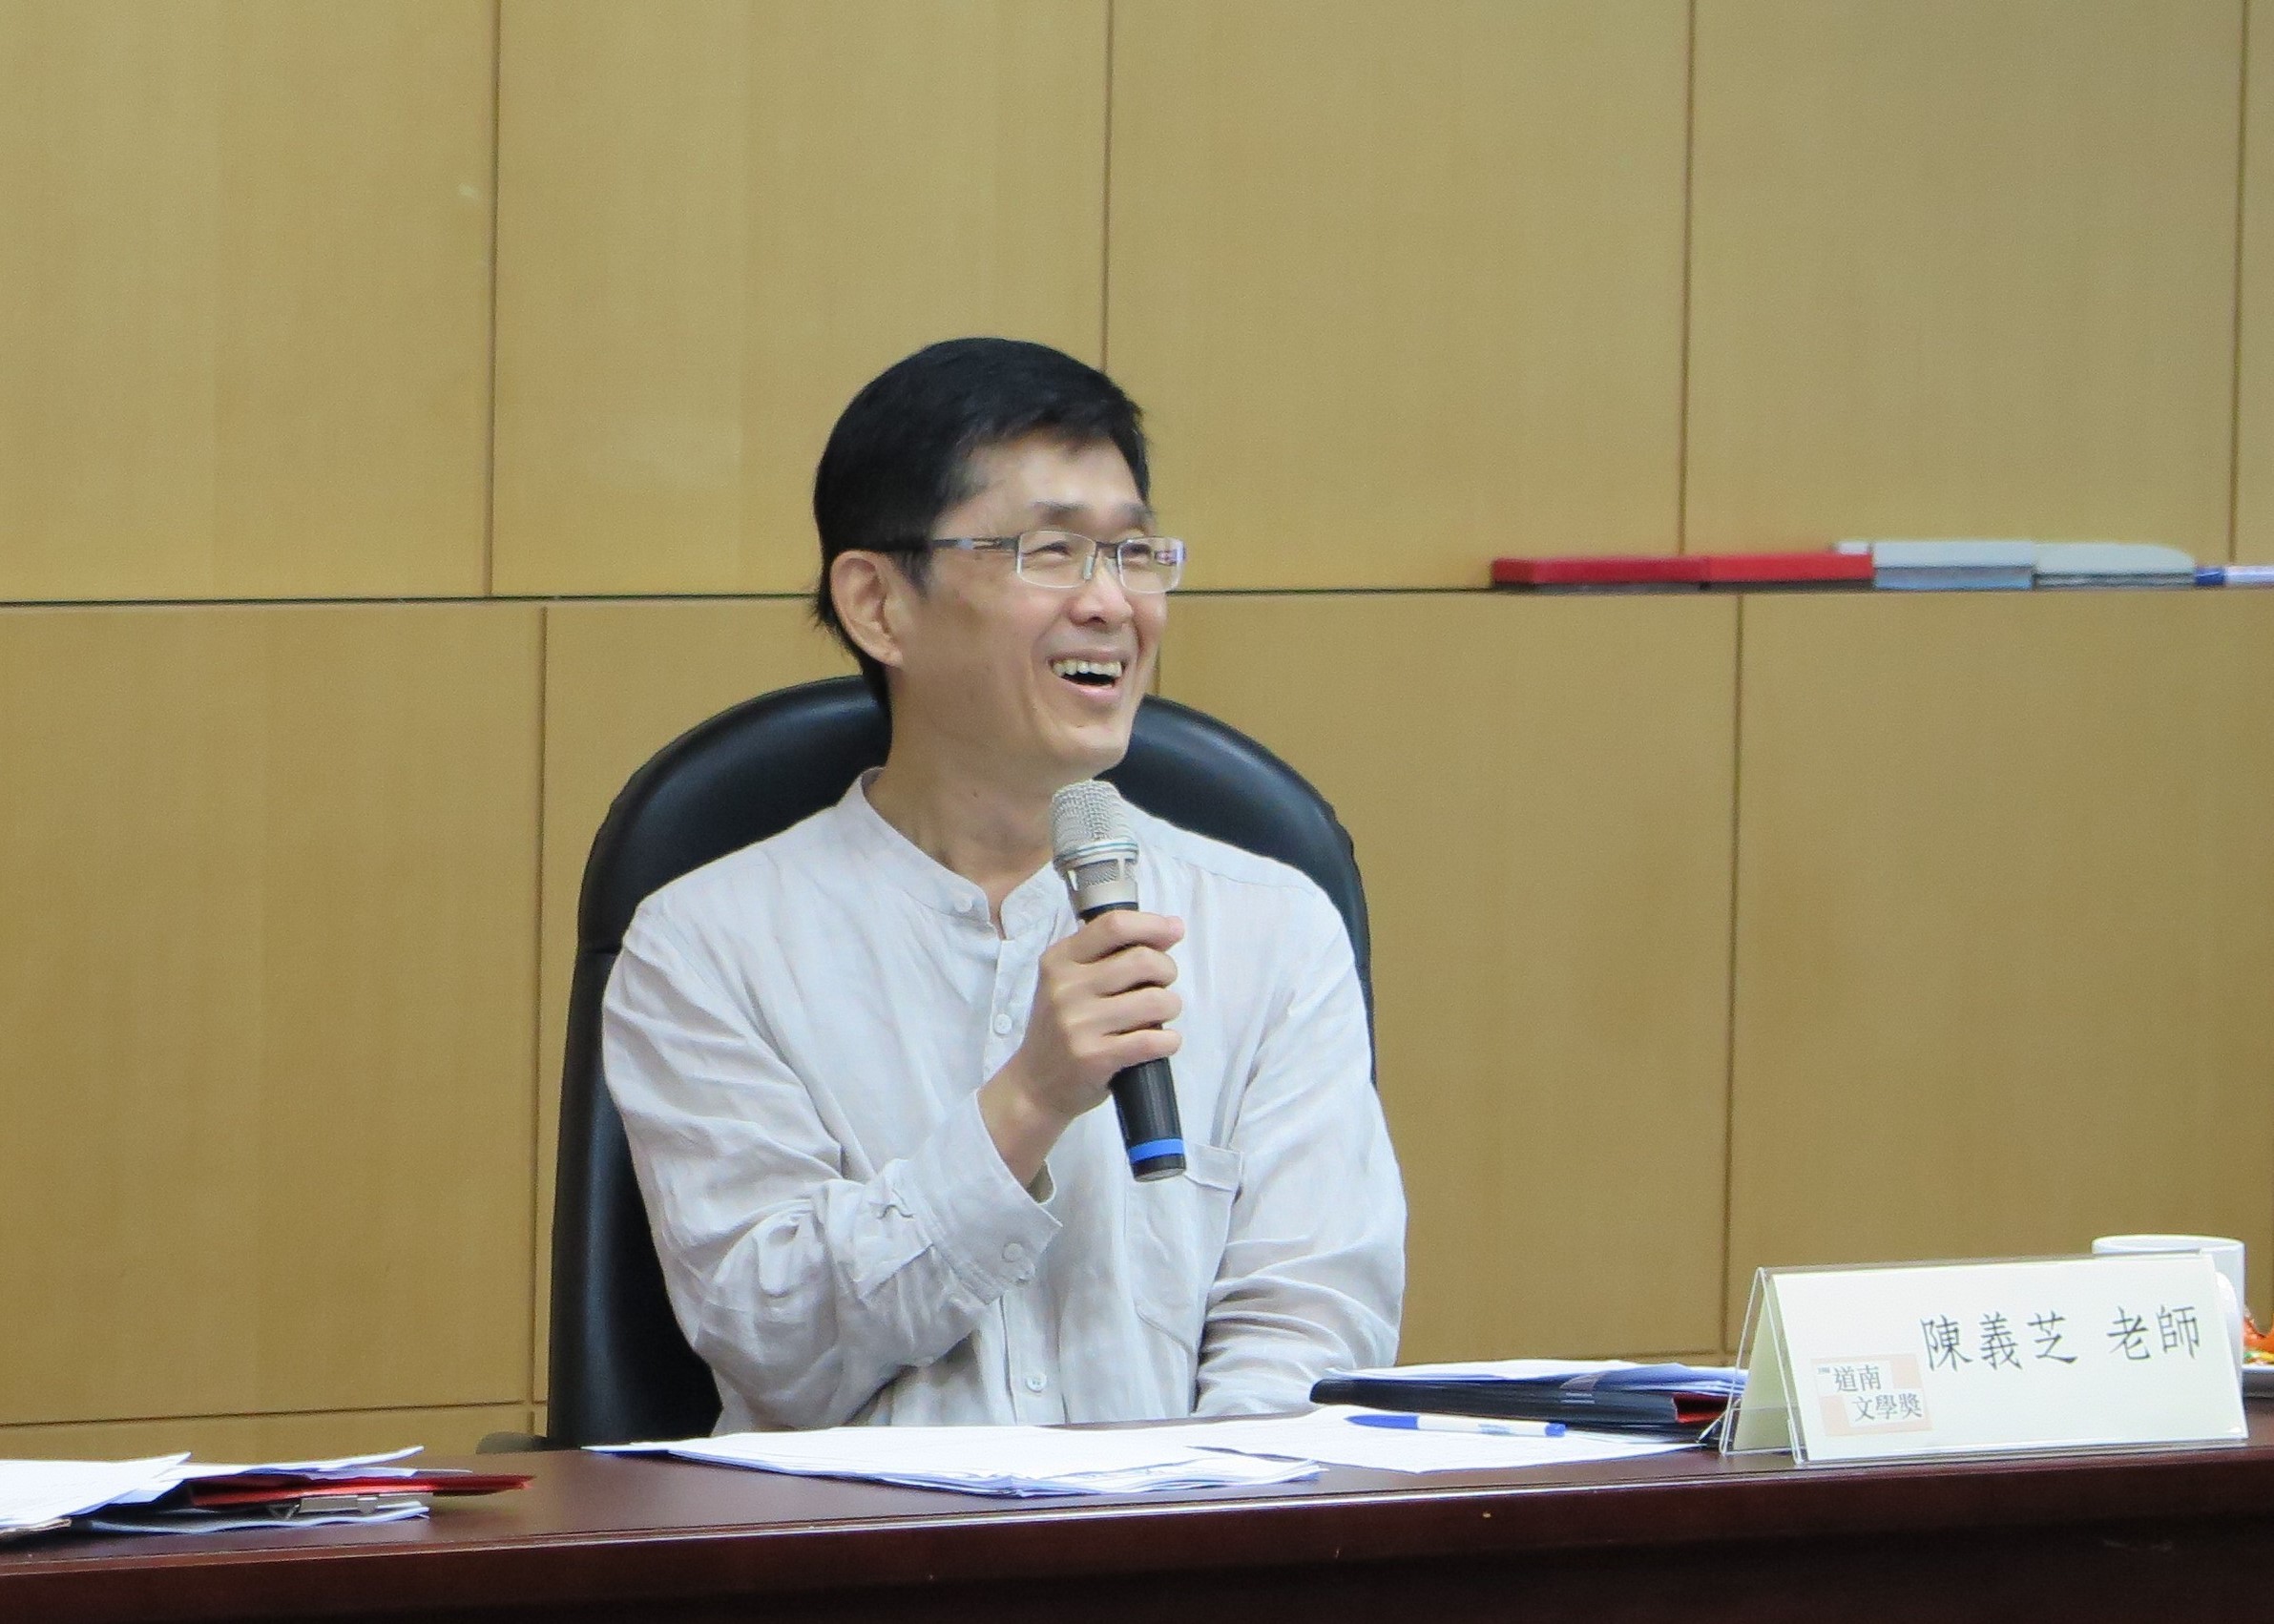 恭賀本系兼任教師陳義芝老師榮獲第26屆臺北文化獎